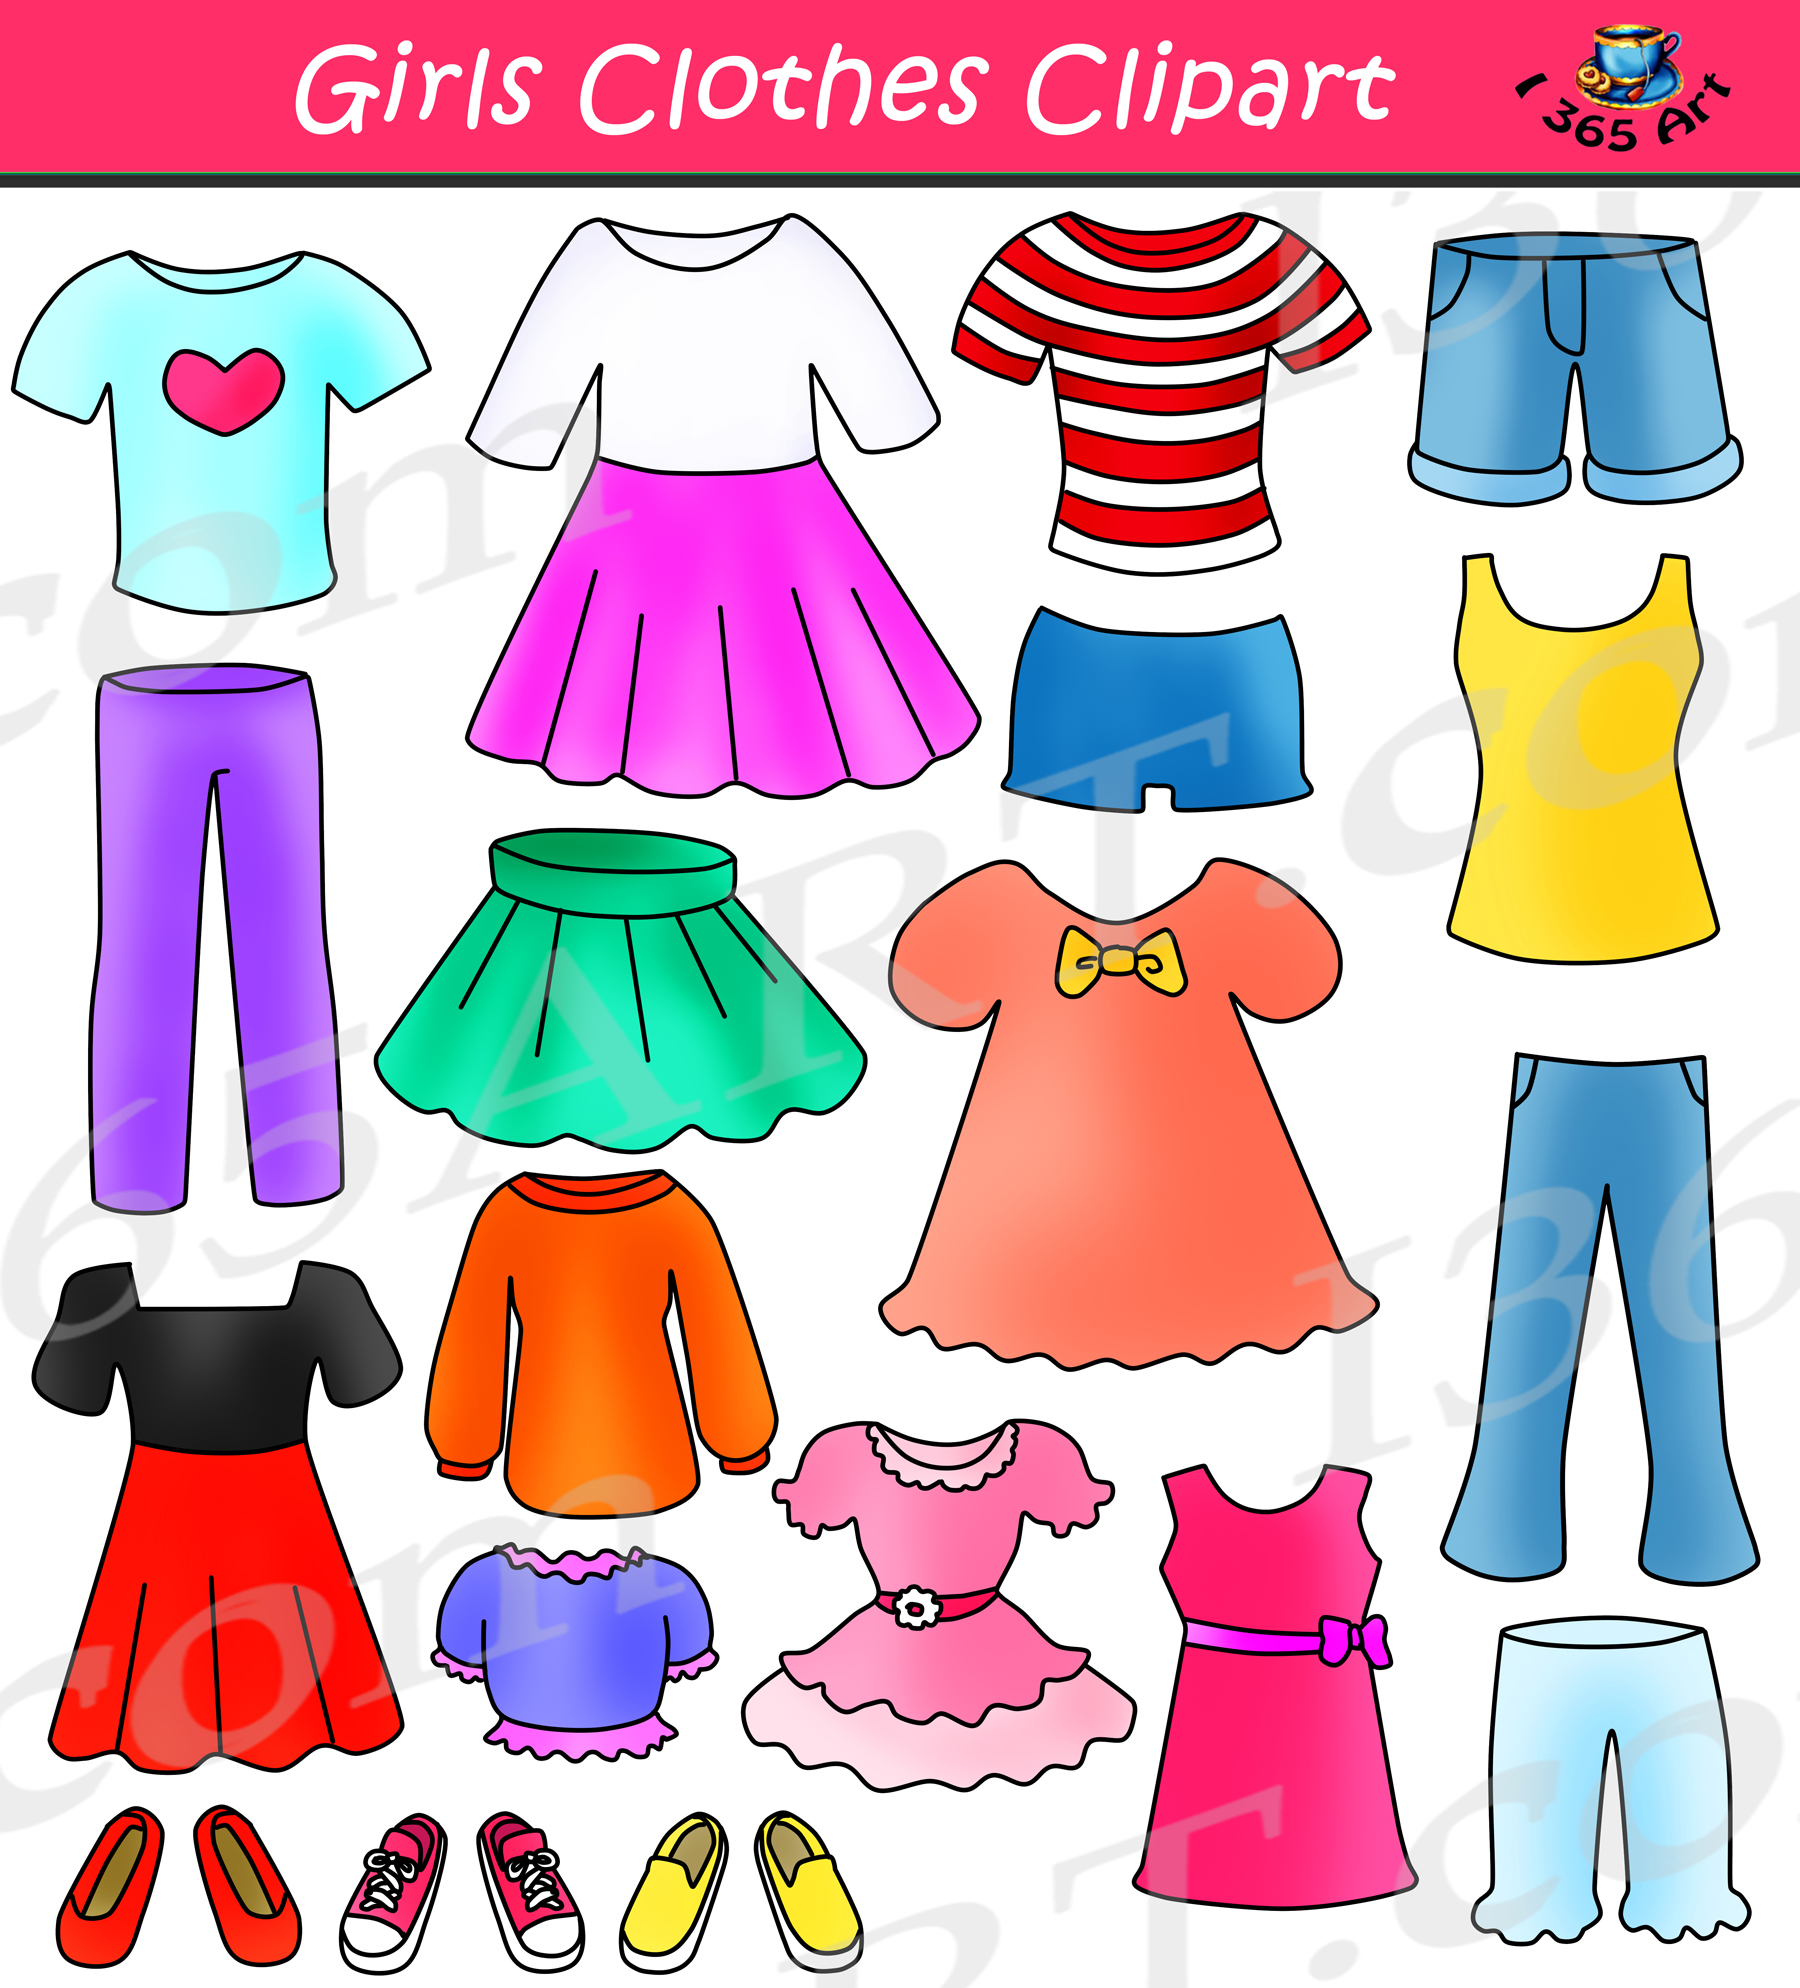 Dress-up одежда для детей